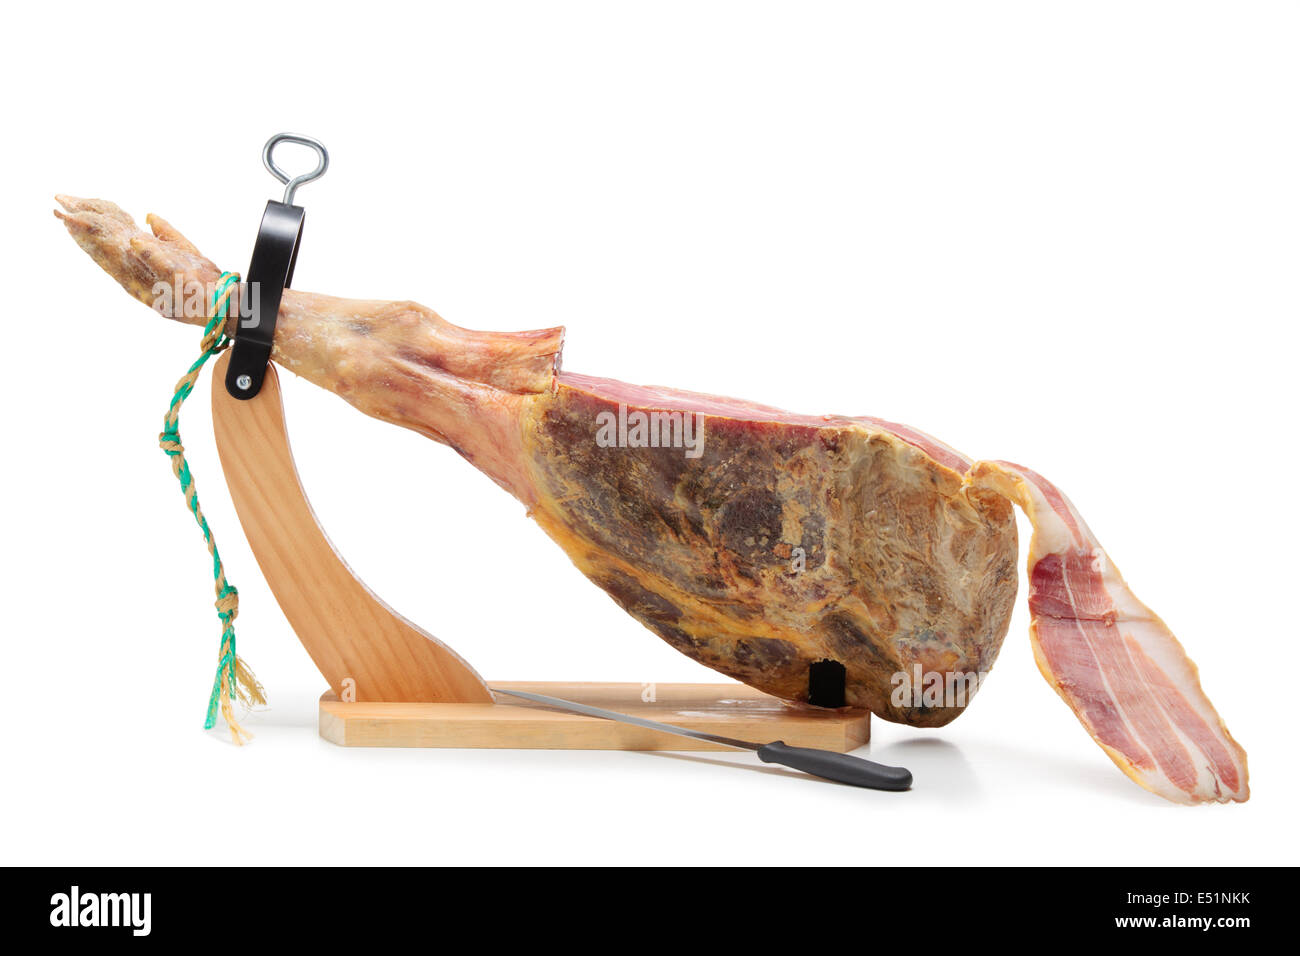 Spanish ham. Jamon Serrano Stock Photo